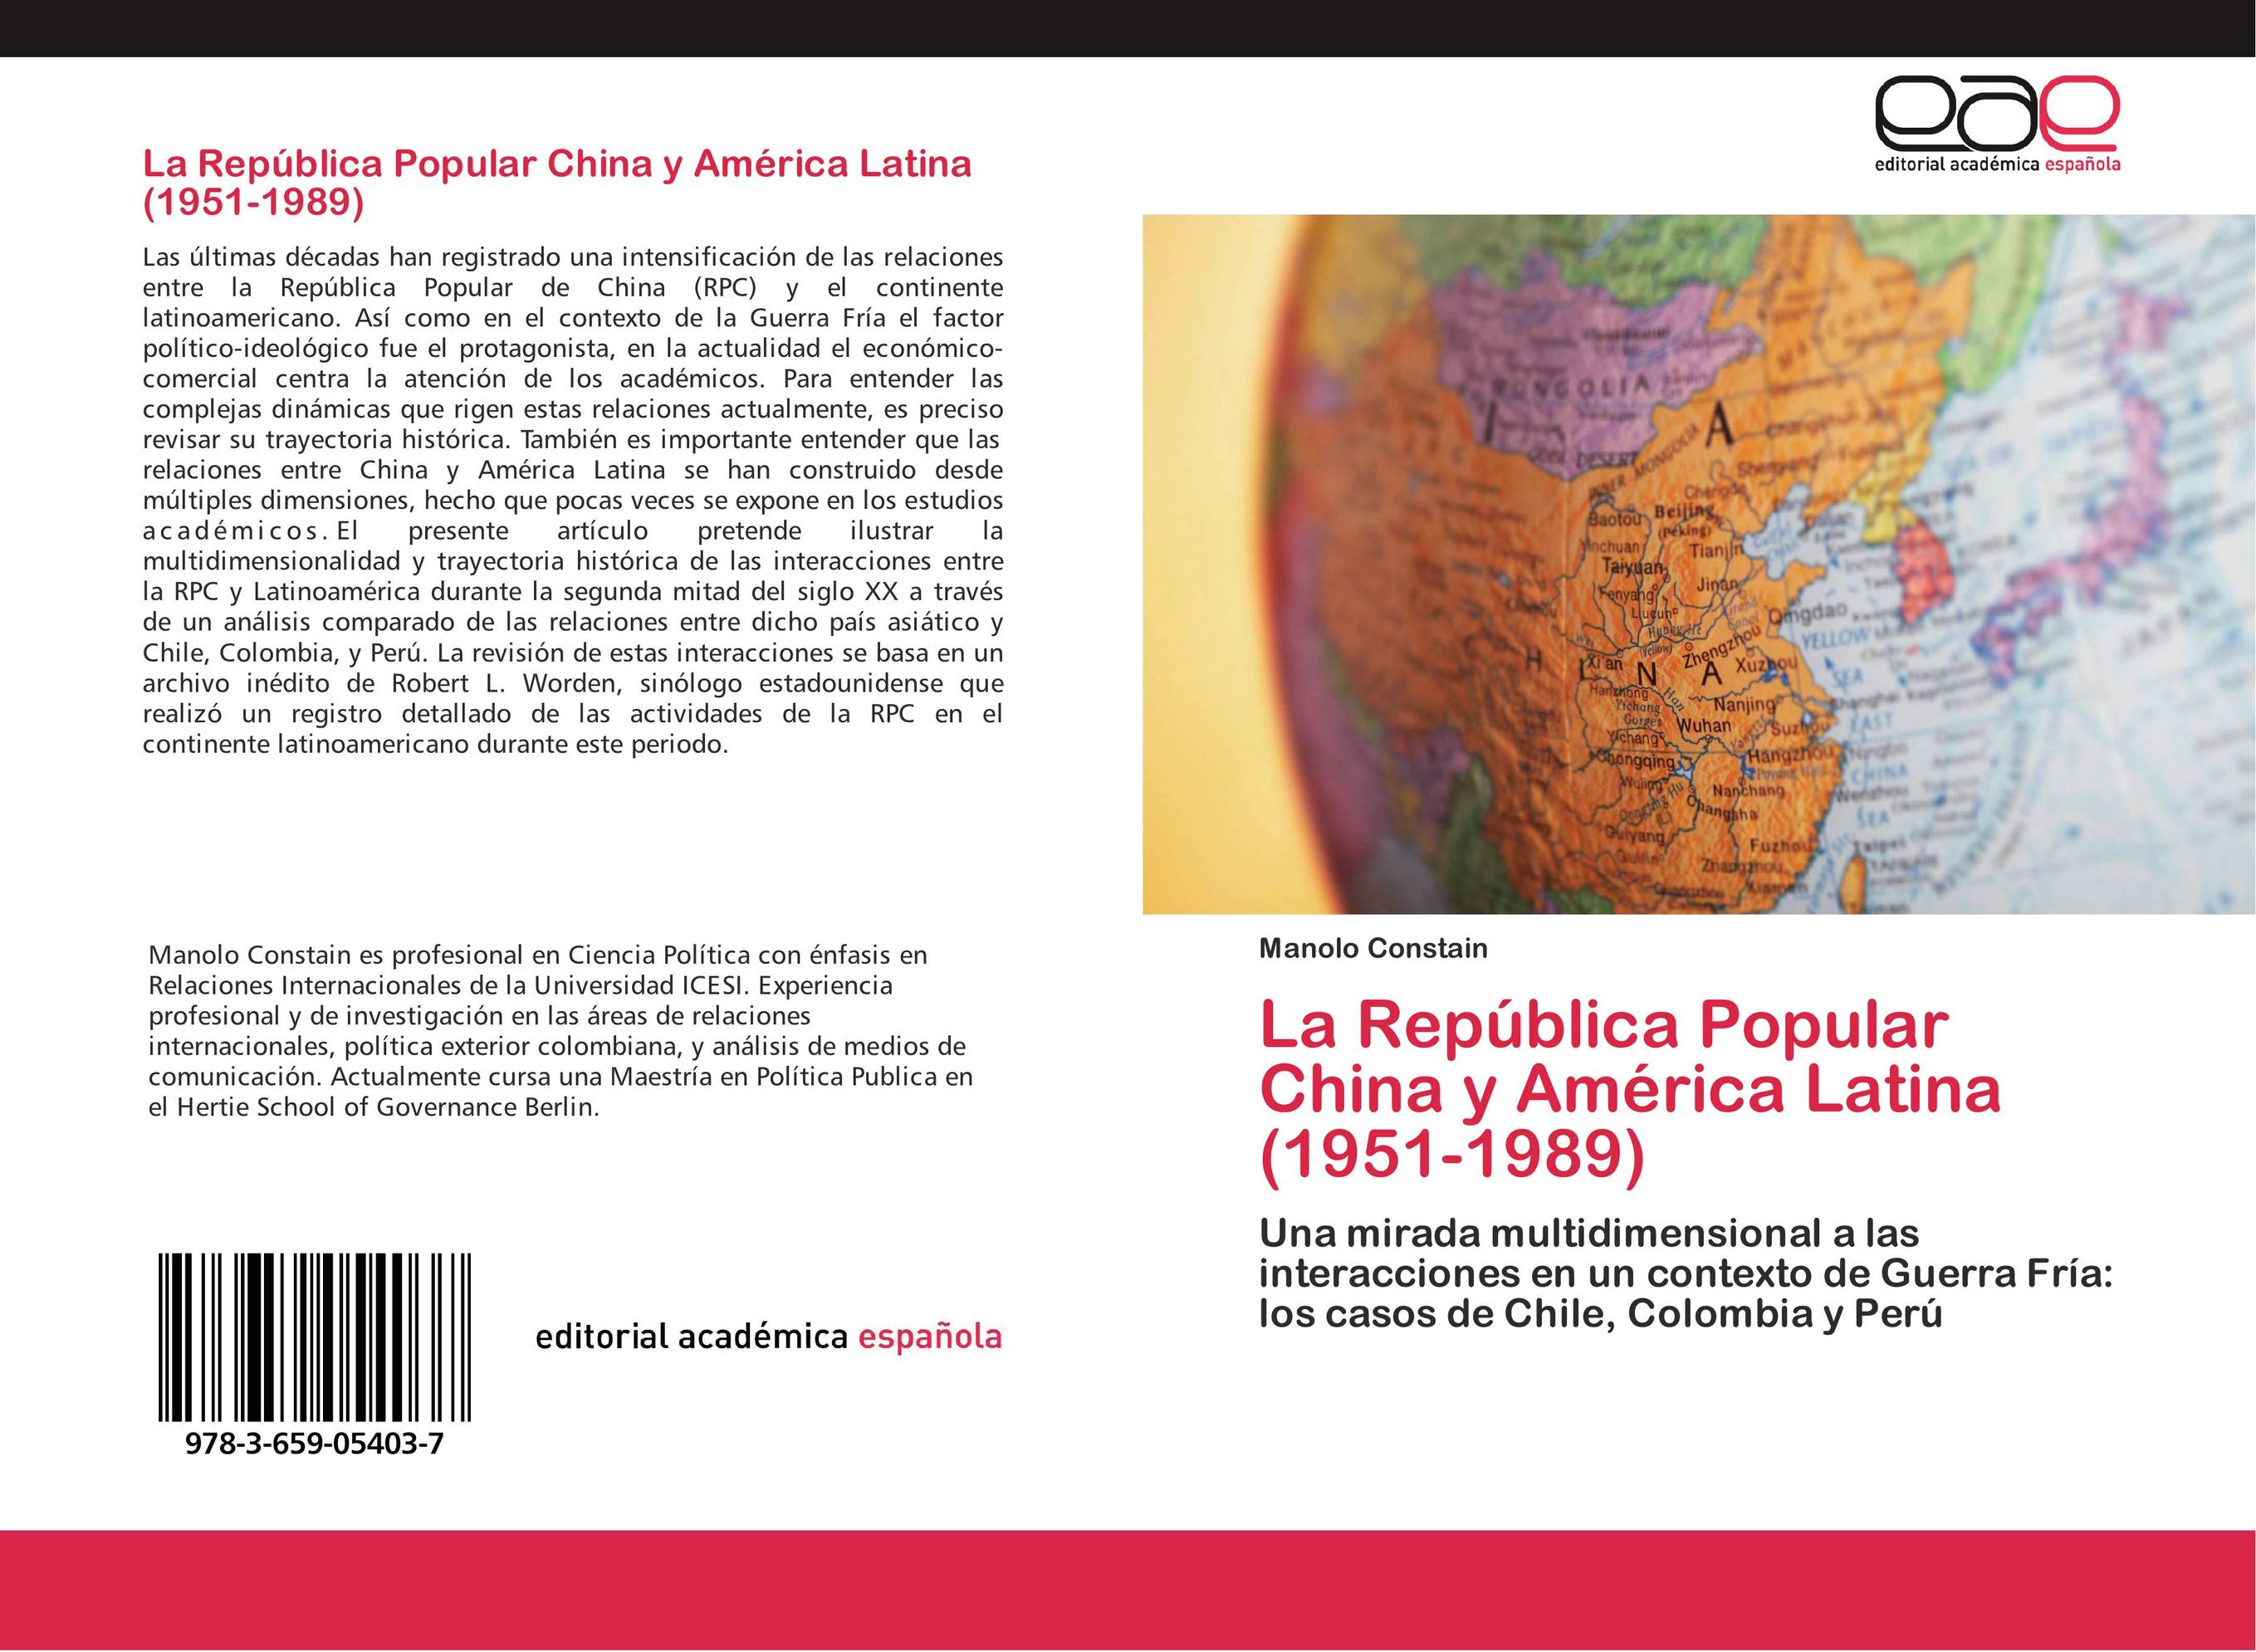 La República Popular China y América Latina (1951-1989)